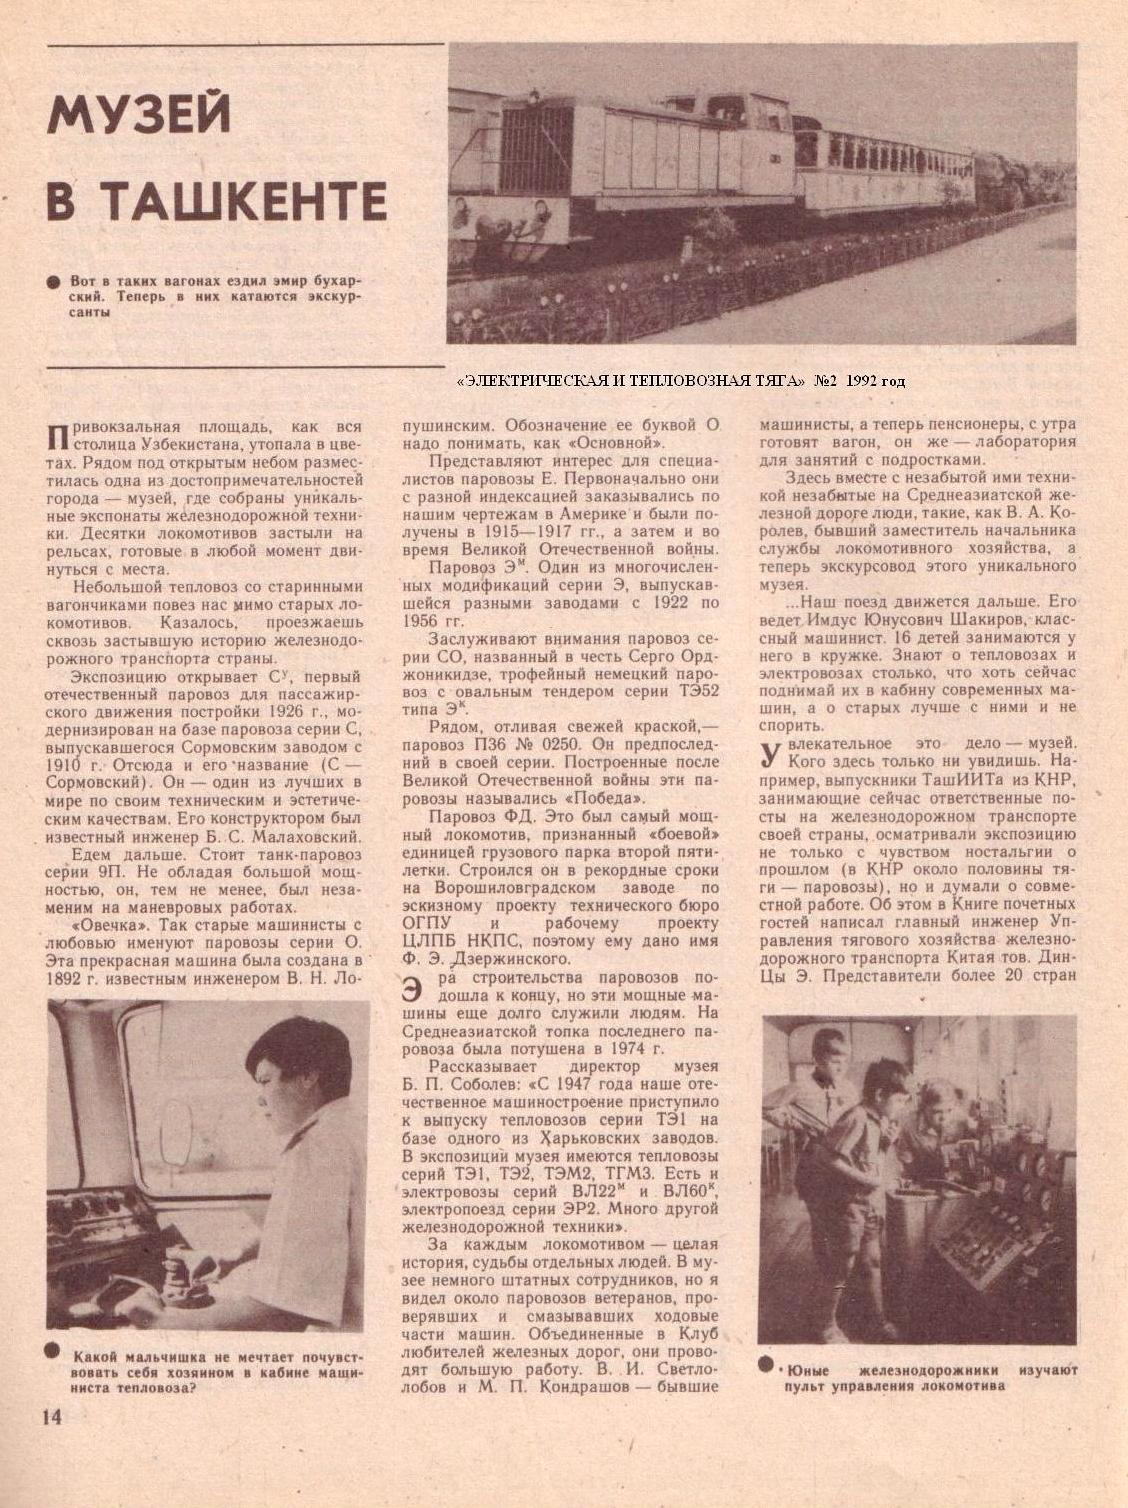 Узкоколейная  железная дорога в Ташкентском музее железнодорожного транспорта —  материалы средств массовой информации